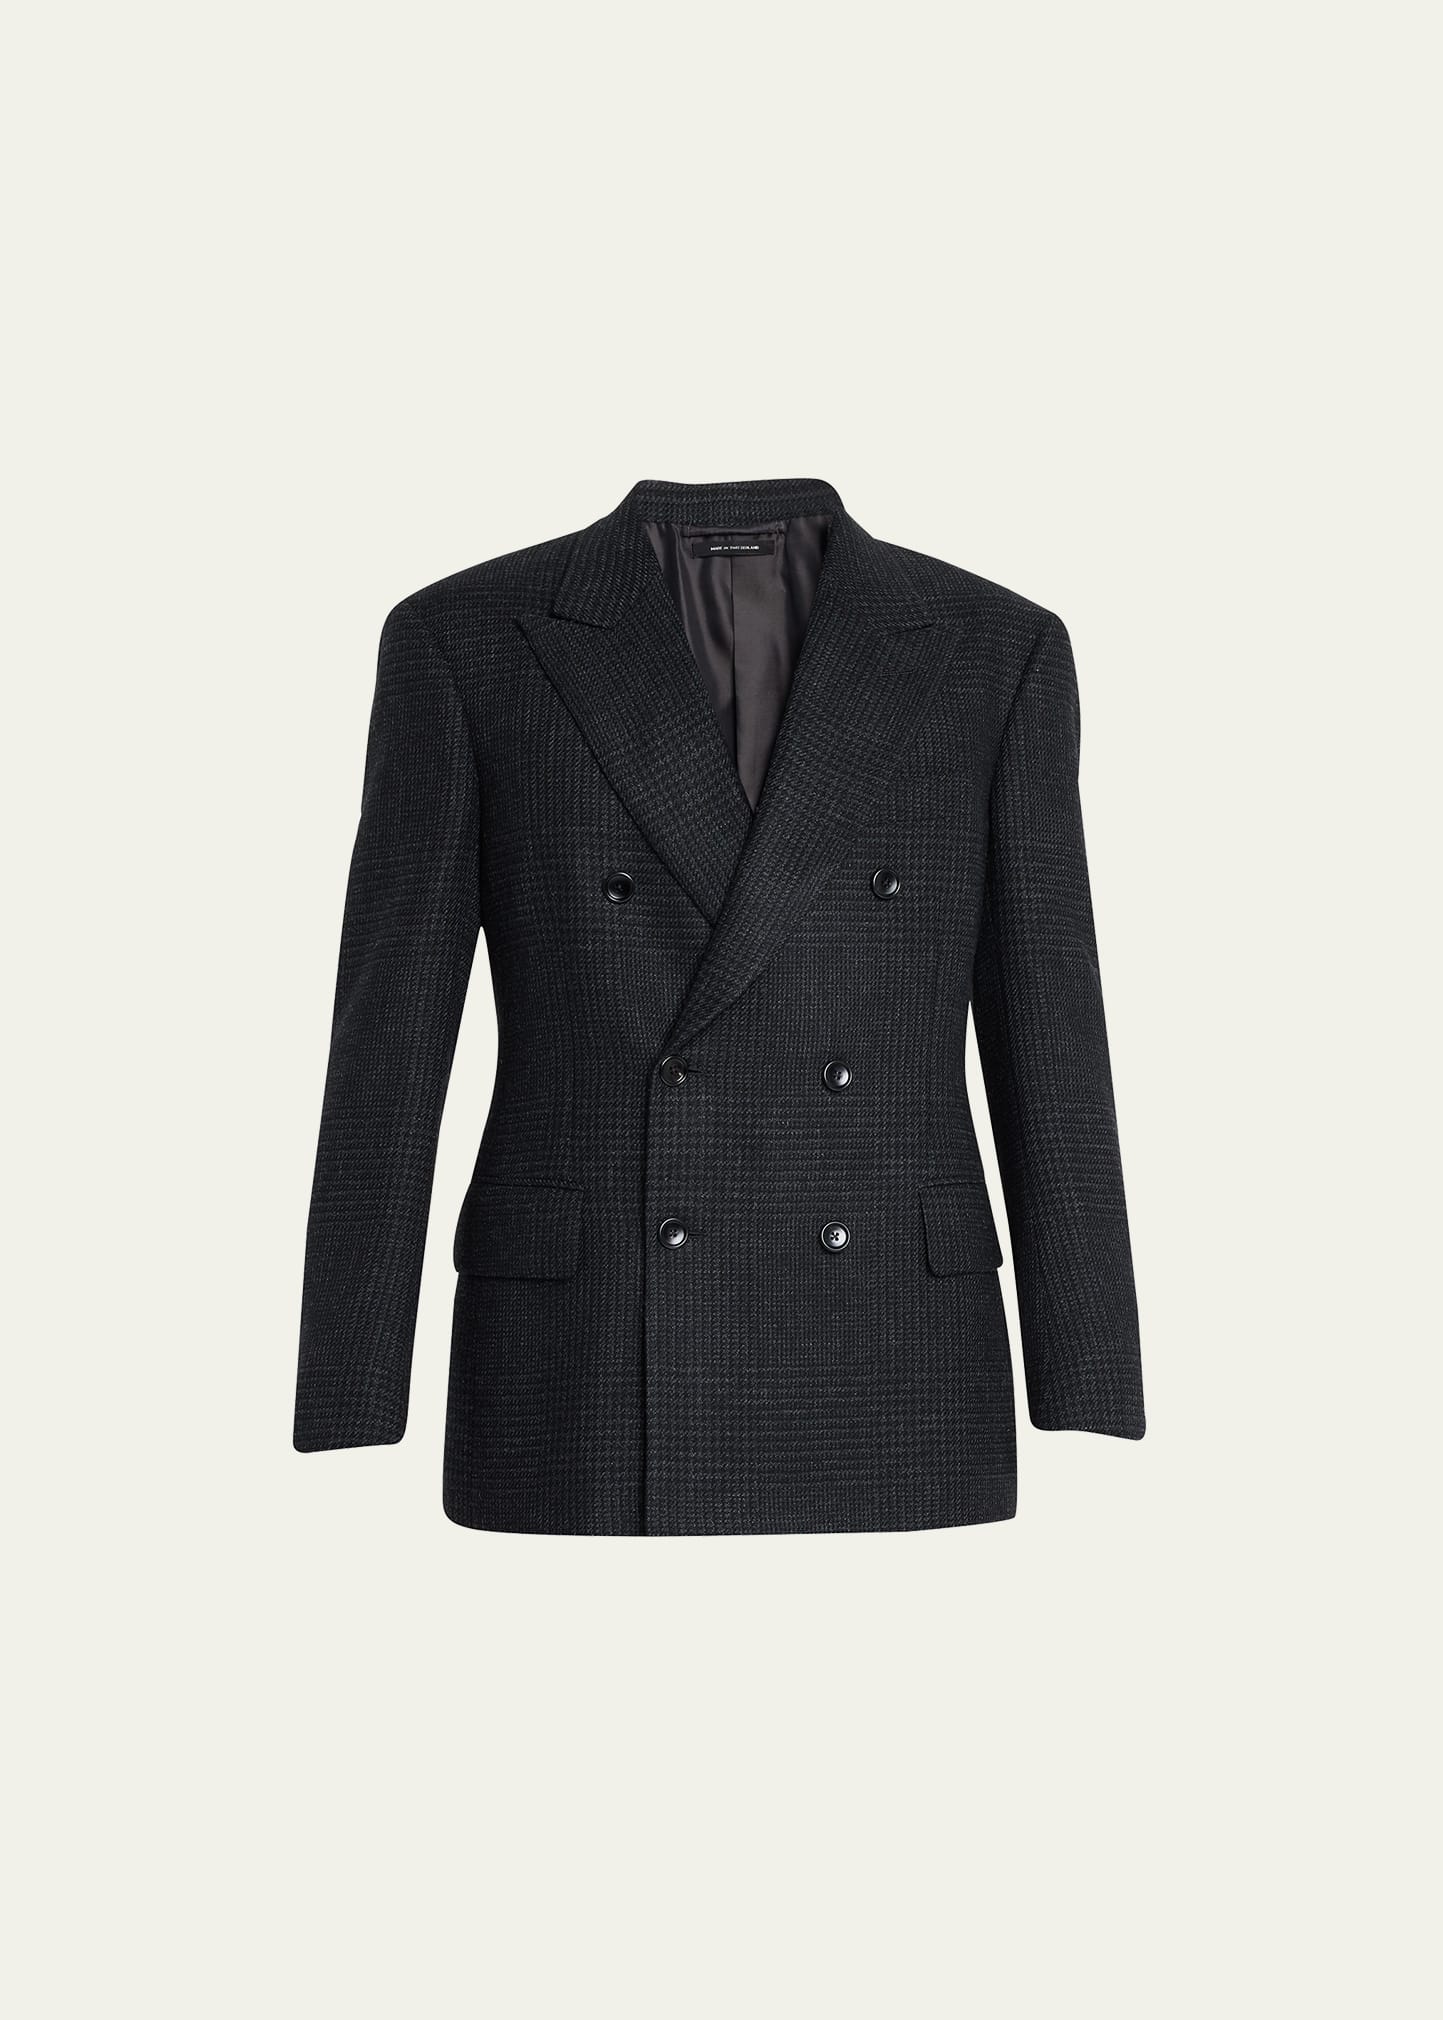 Men's Wool-Blend Check Suit